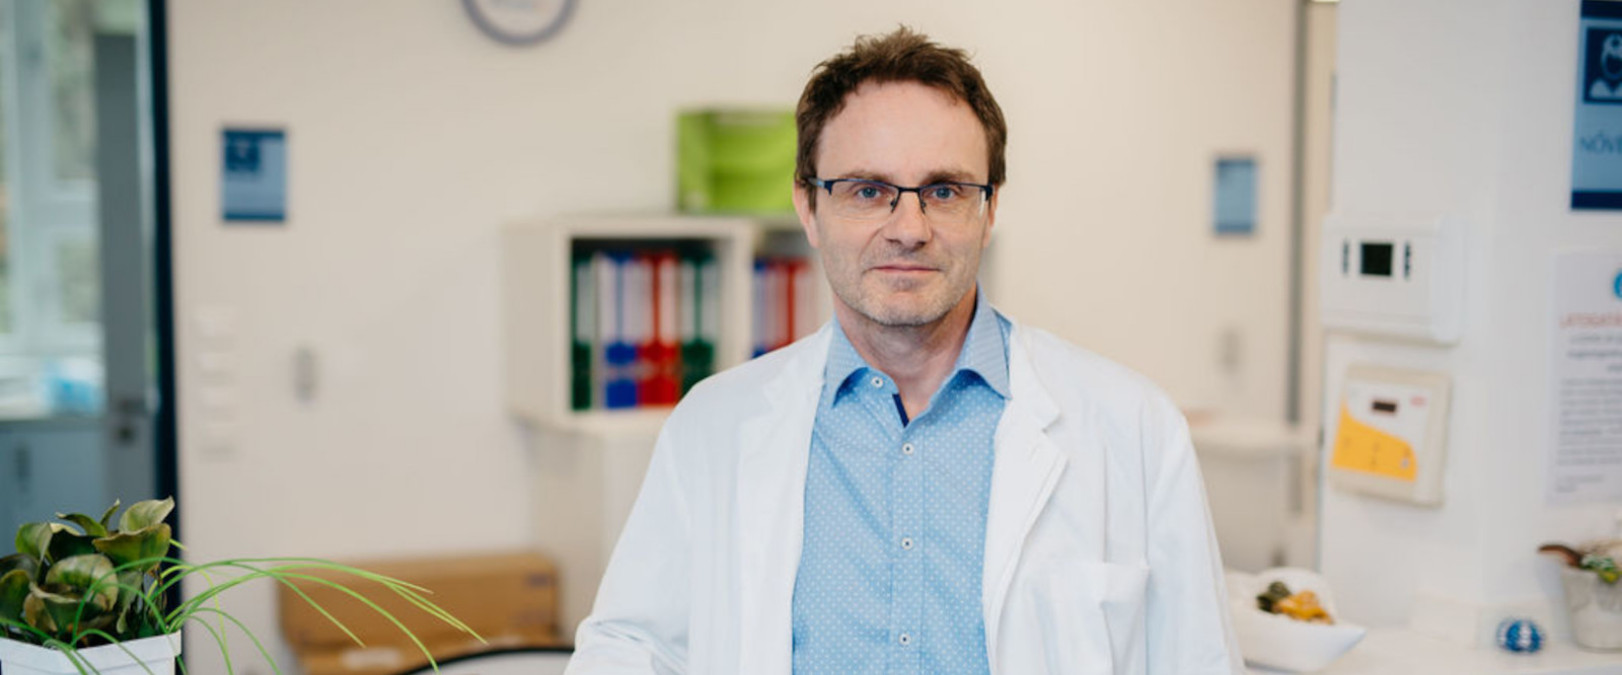 Dr. Toldy-Schedel Emil elnök, belgyógyász-kardiológus, a Budapesti Szent Ferenc Kórház főigazgatója